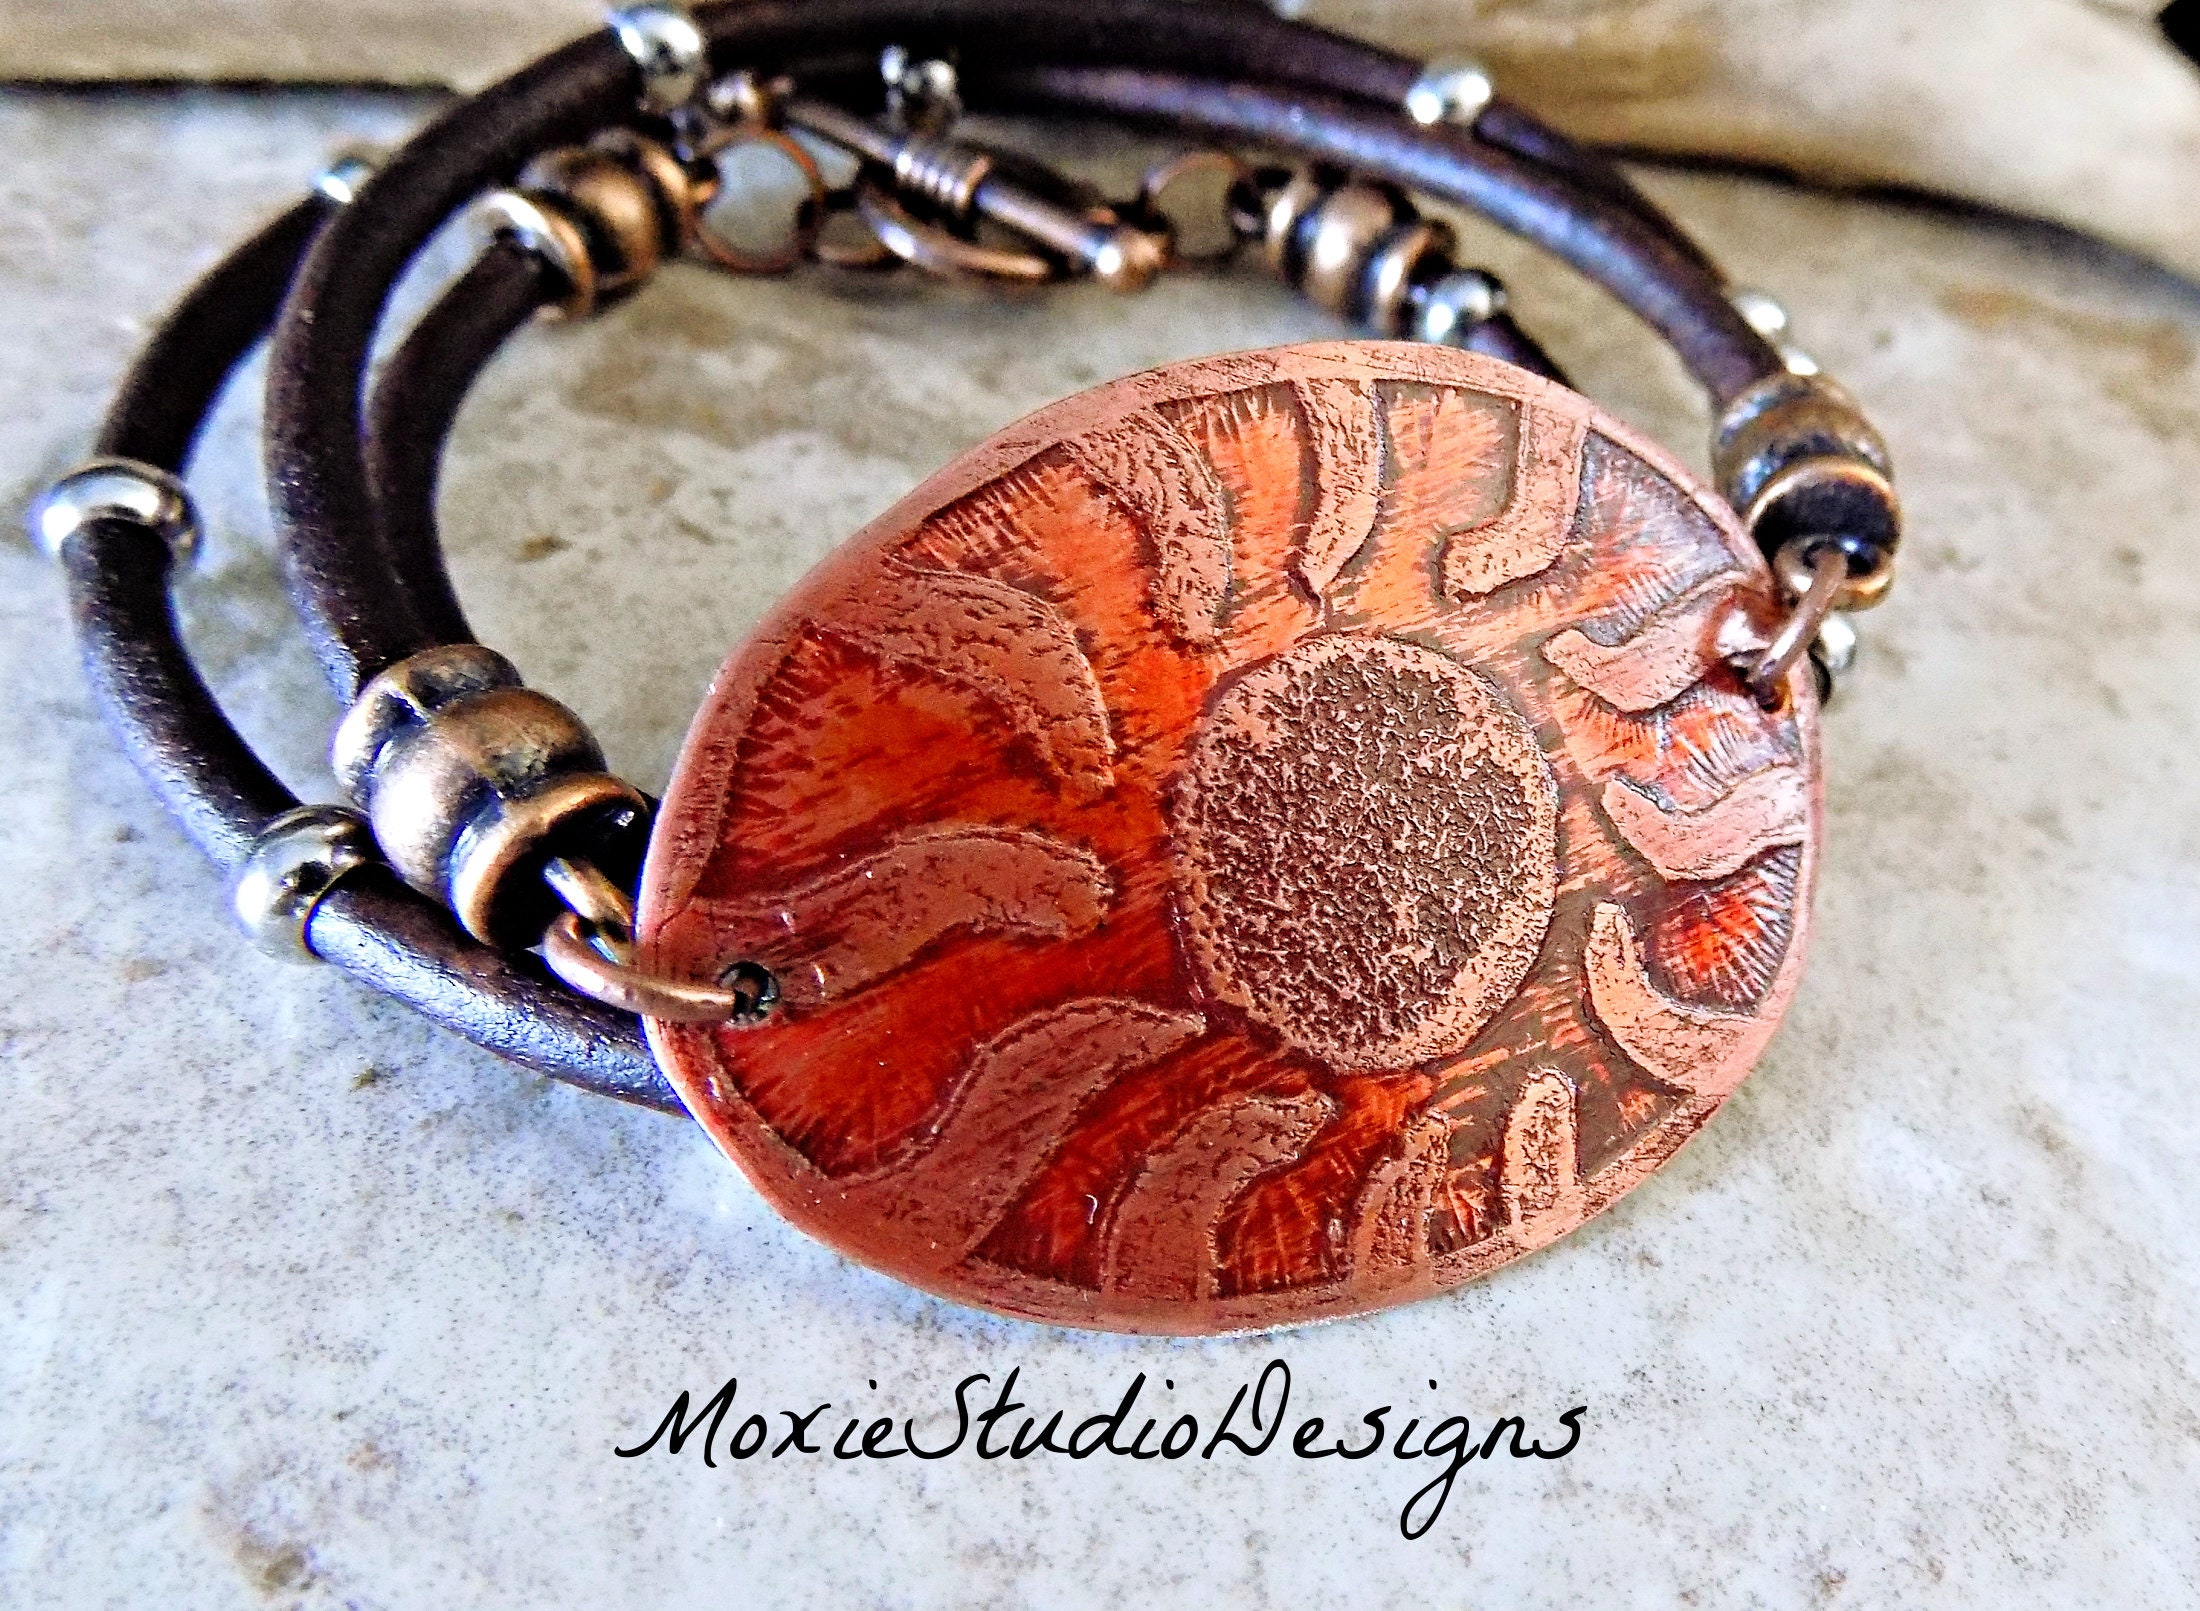 Handmade Magic Sun Bracelet - Wire Wrapped Jewelry